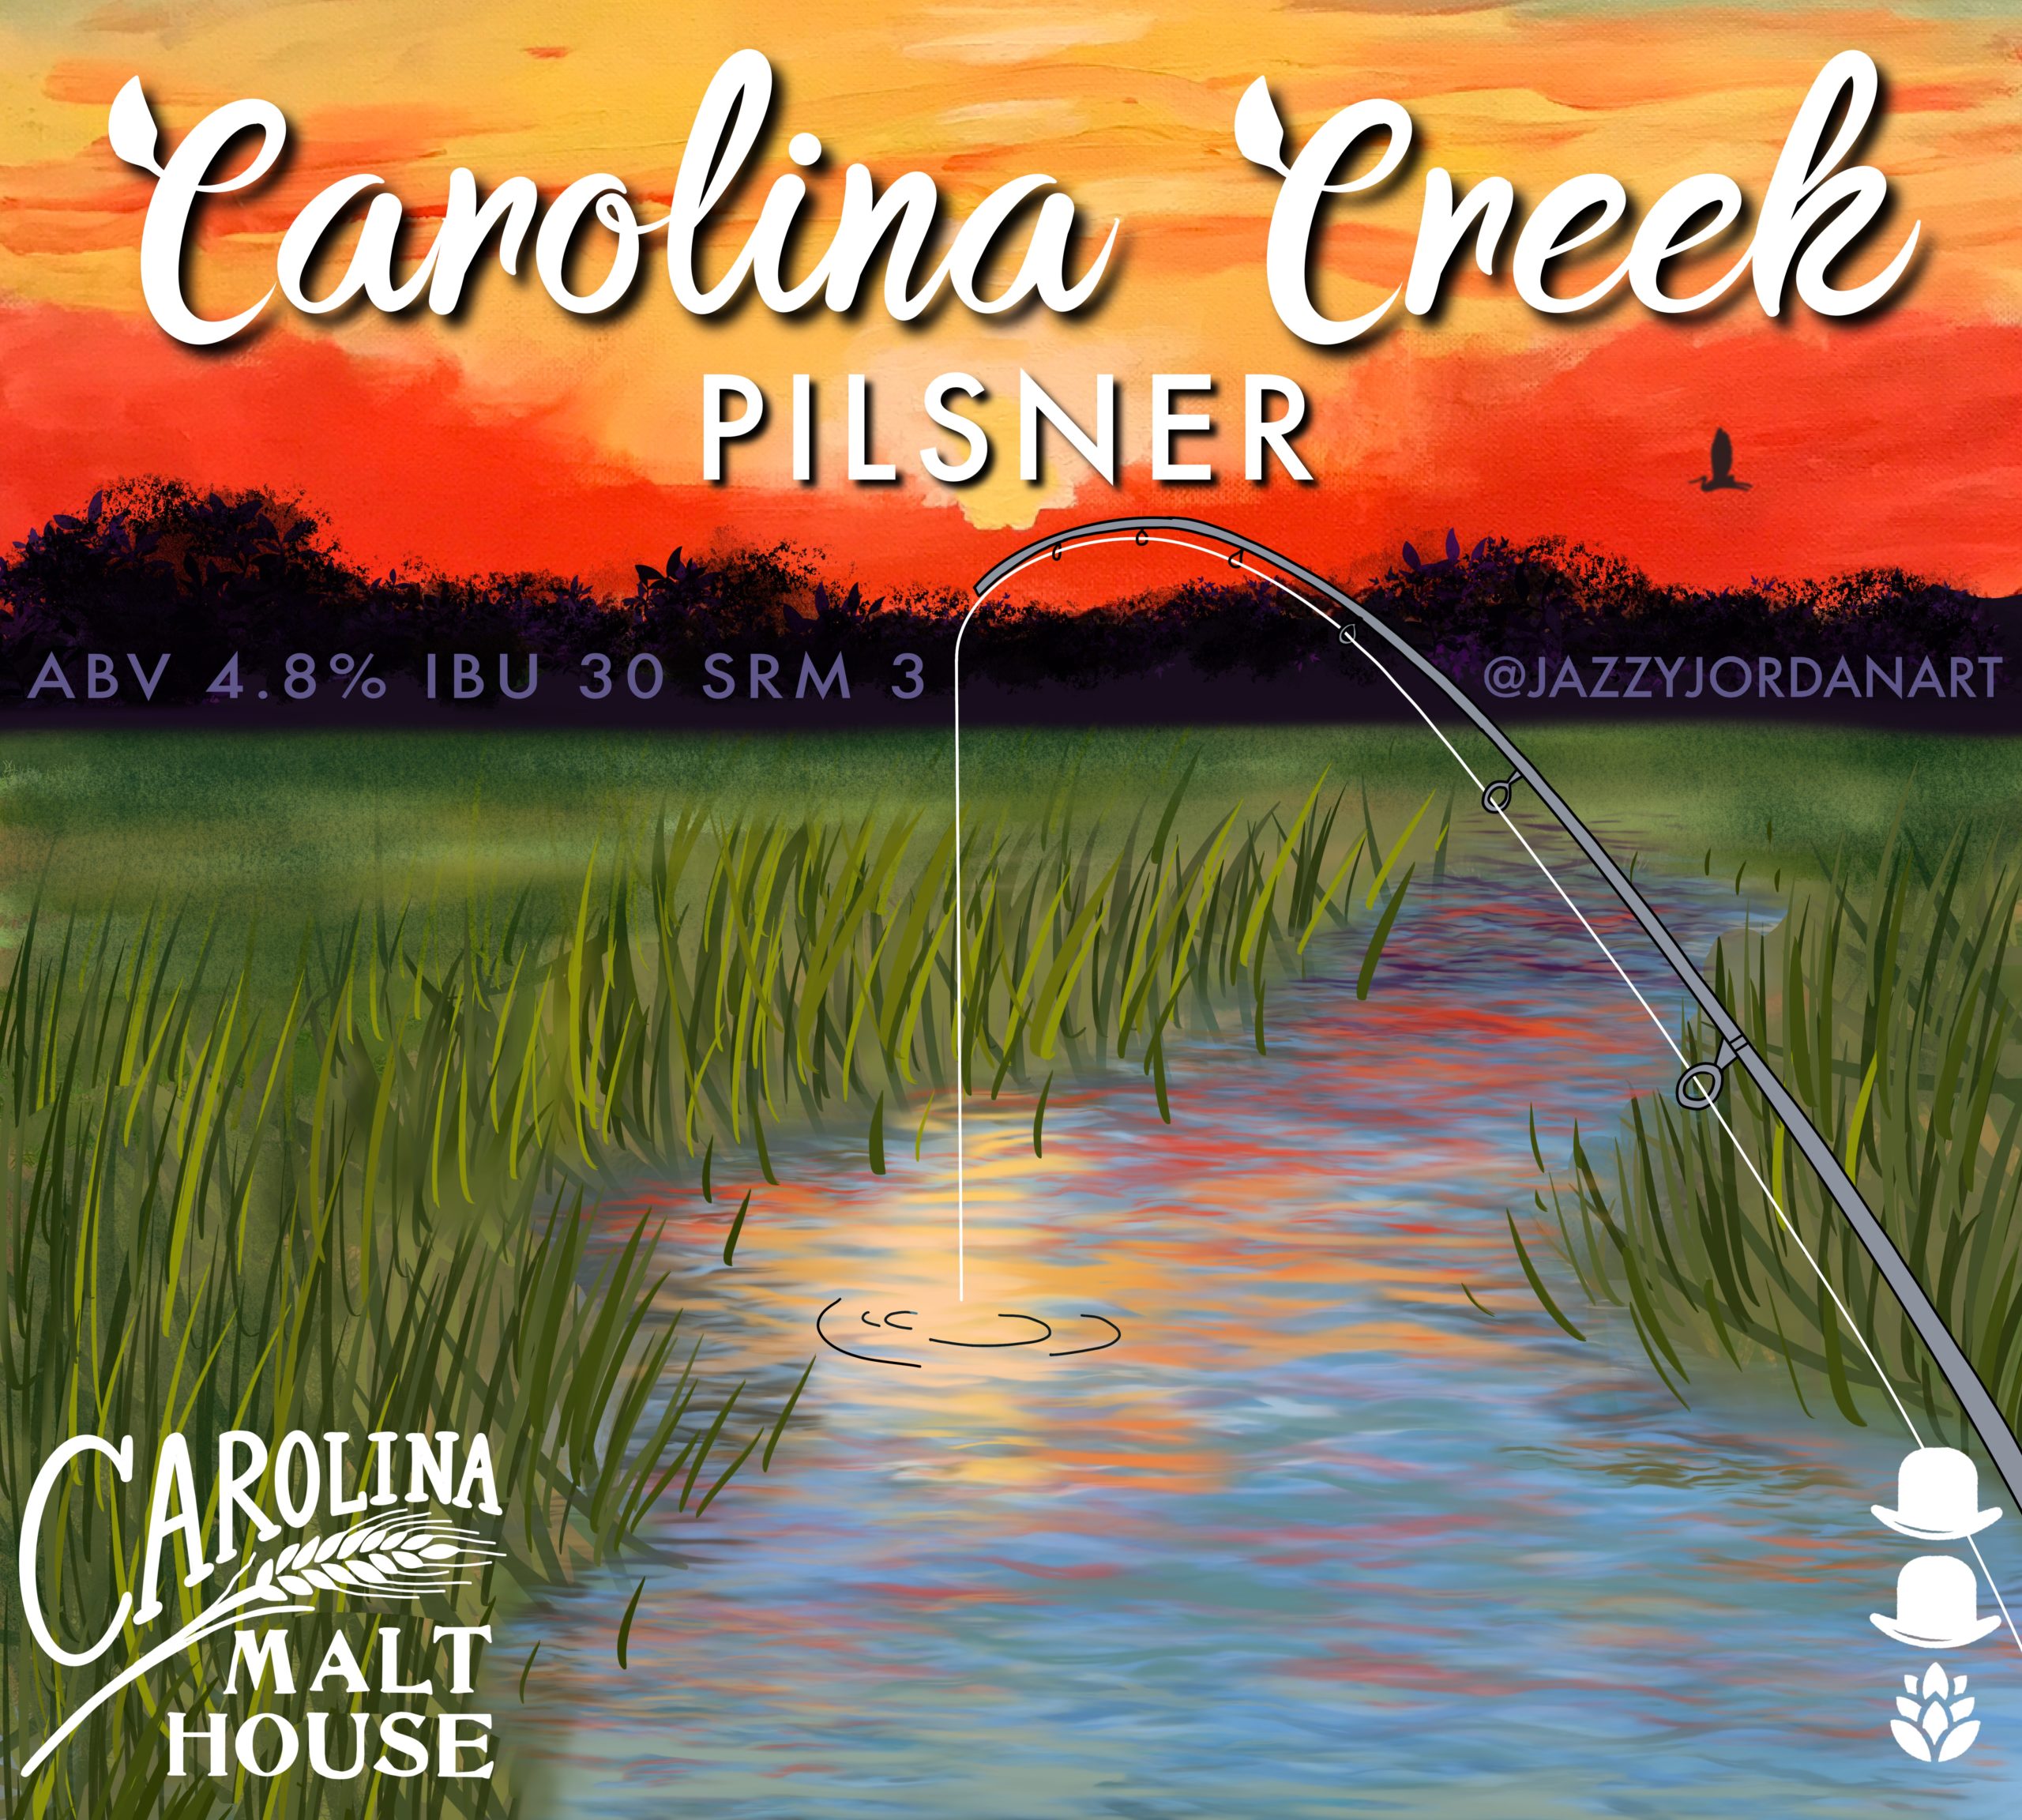 Carolina Creek Pilsner